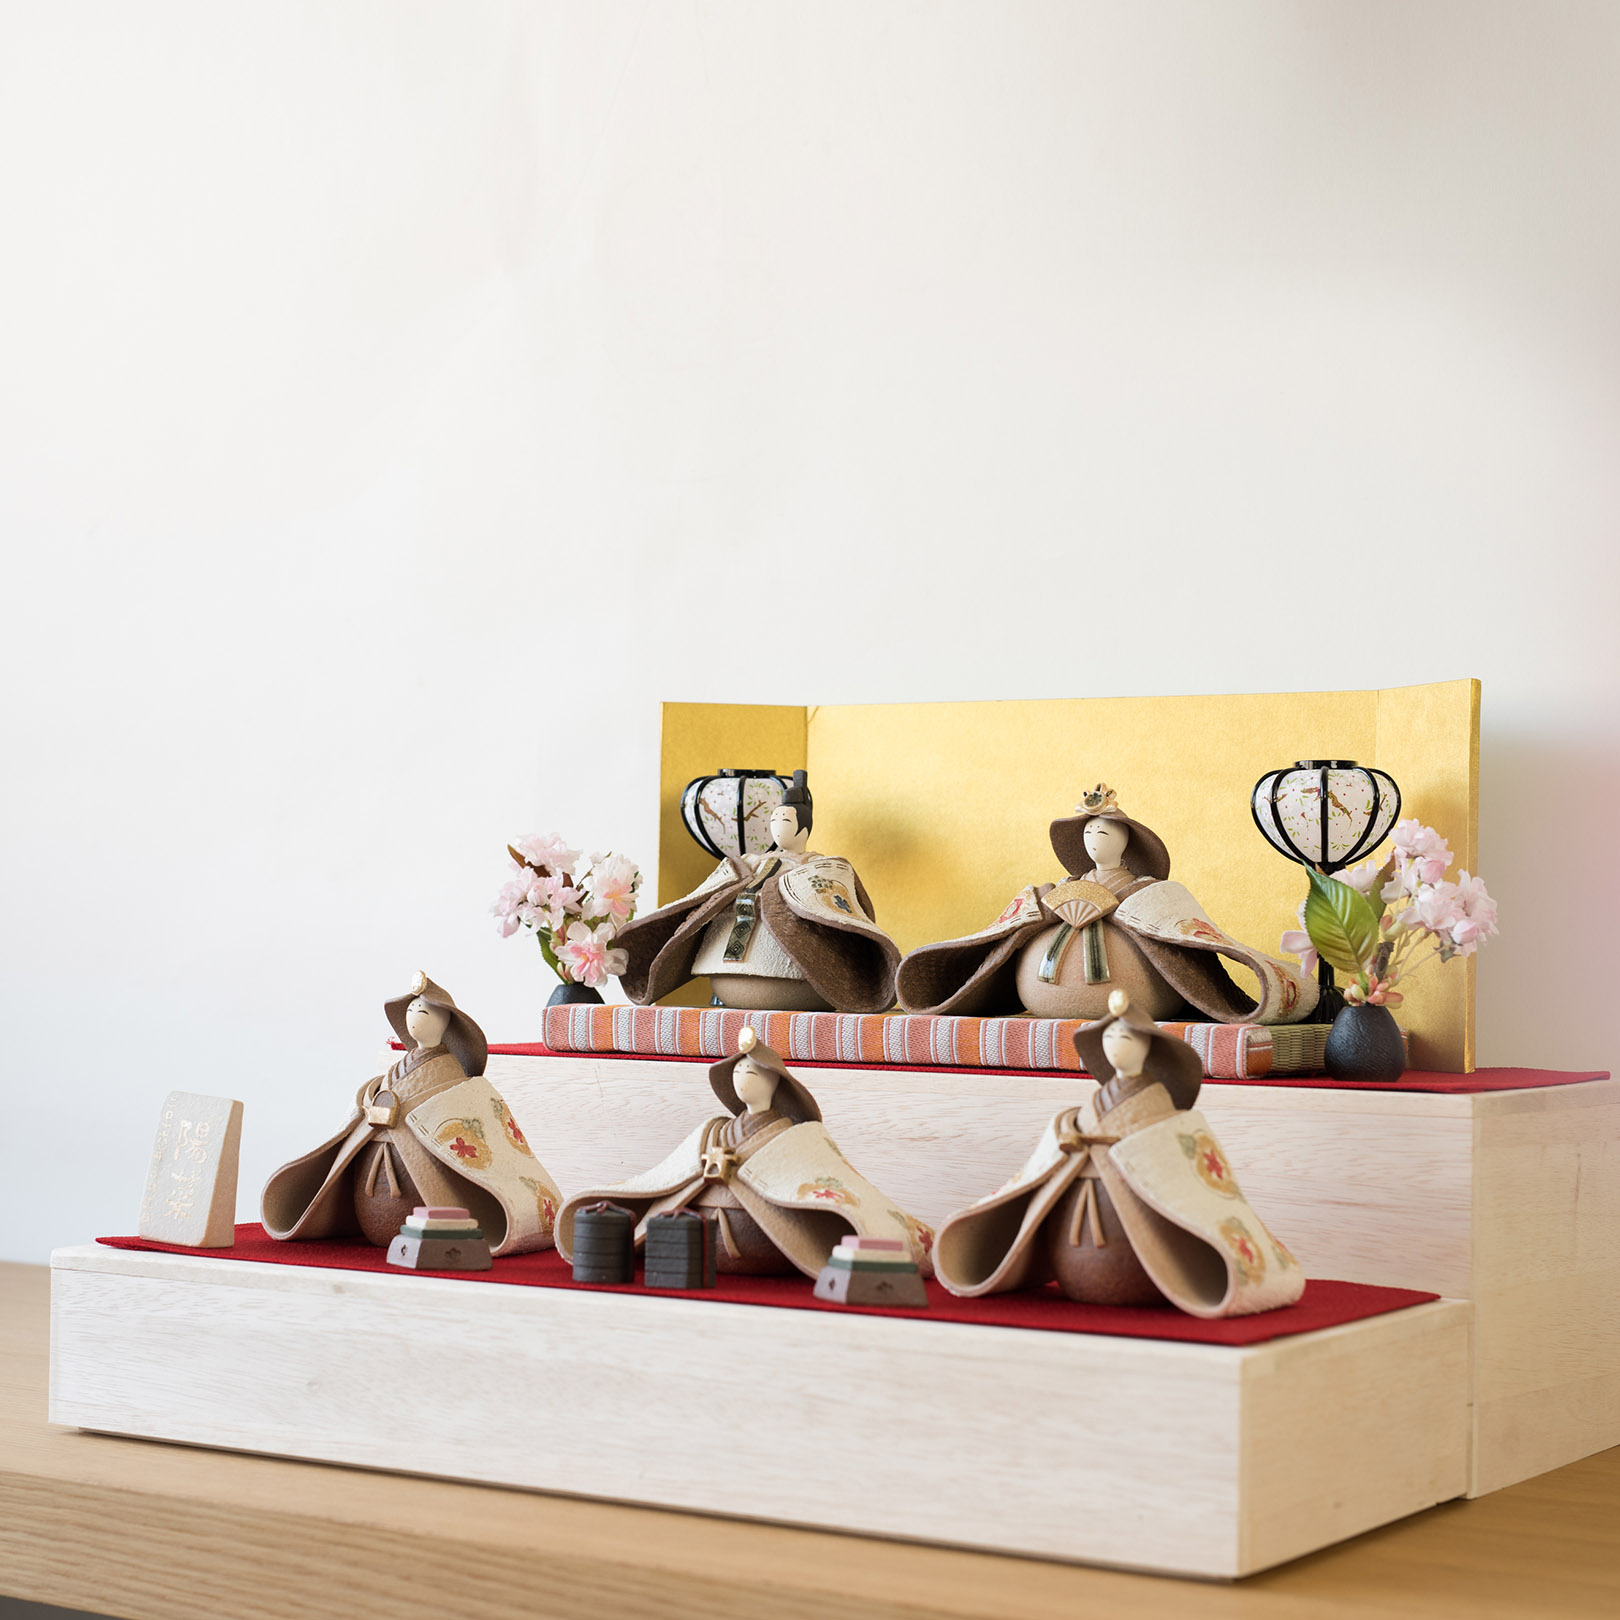 信楽焼の陶器の雛人形を飾っている画像